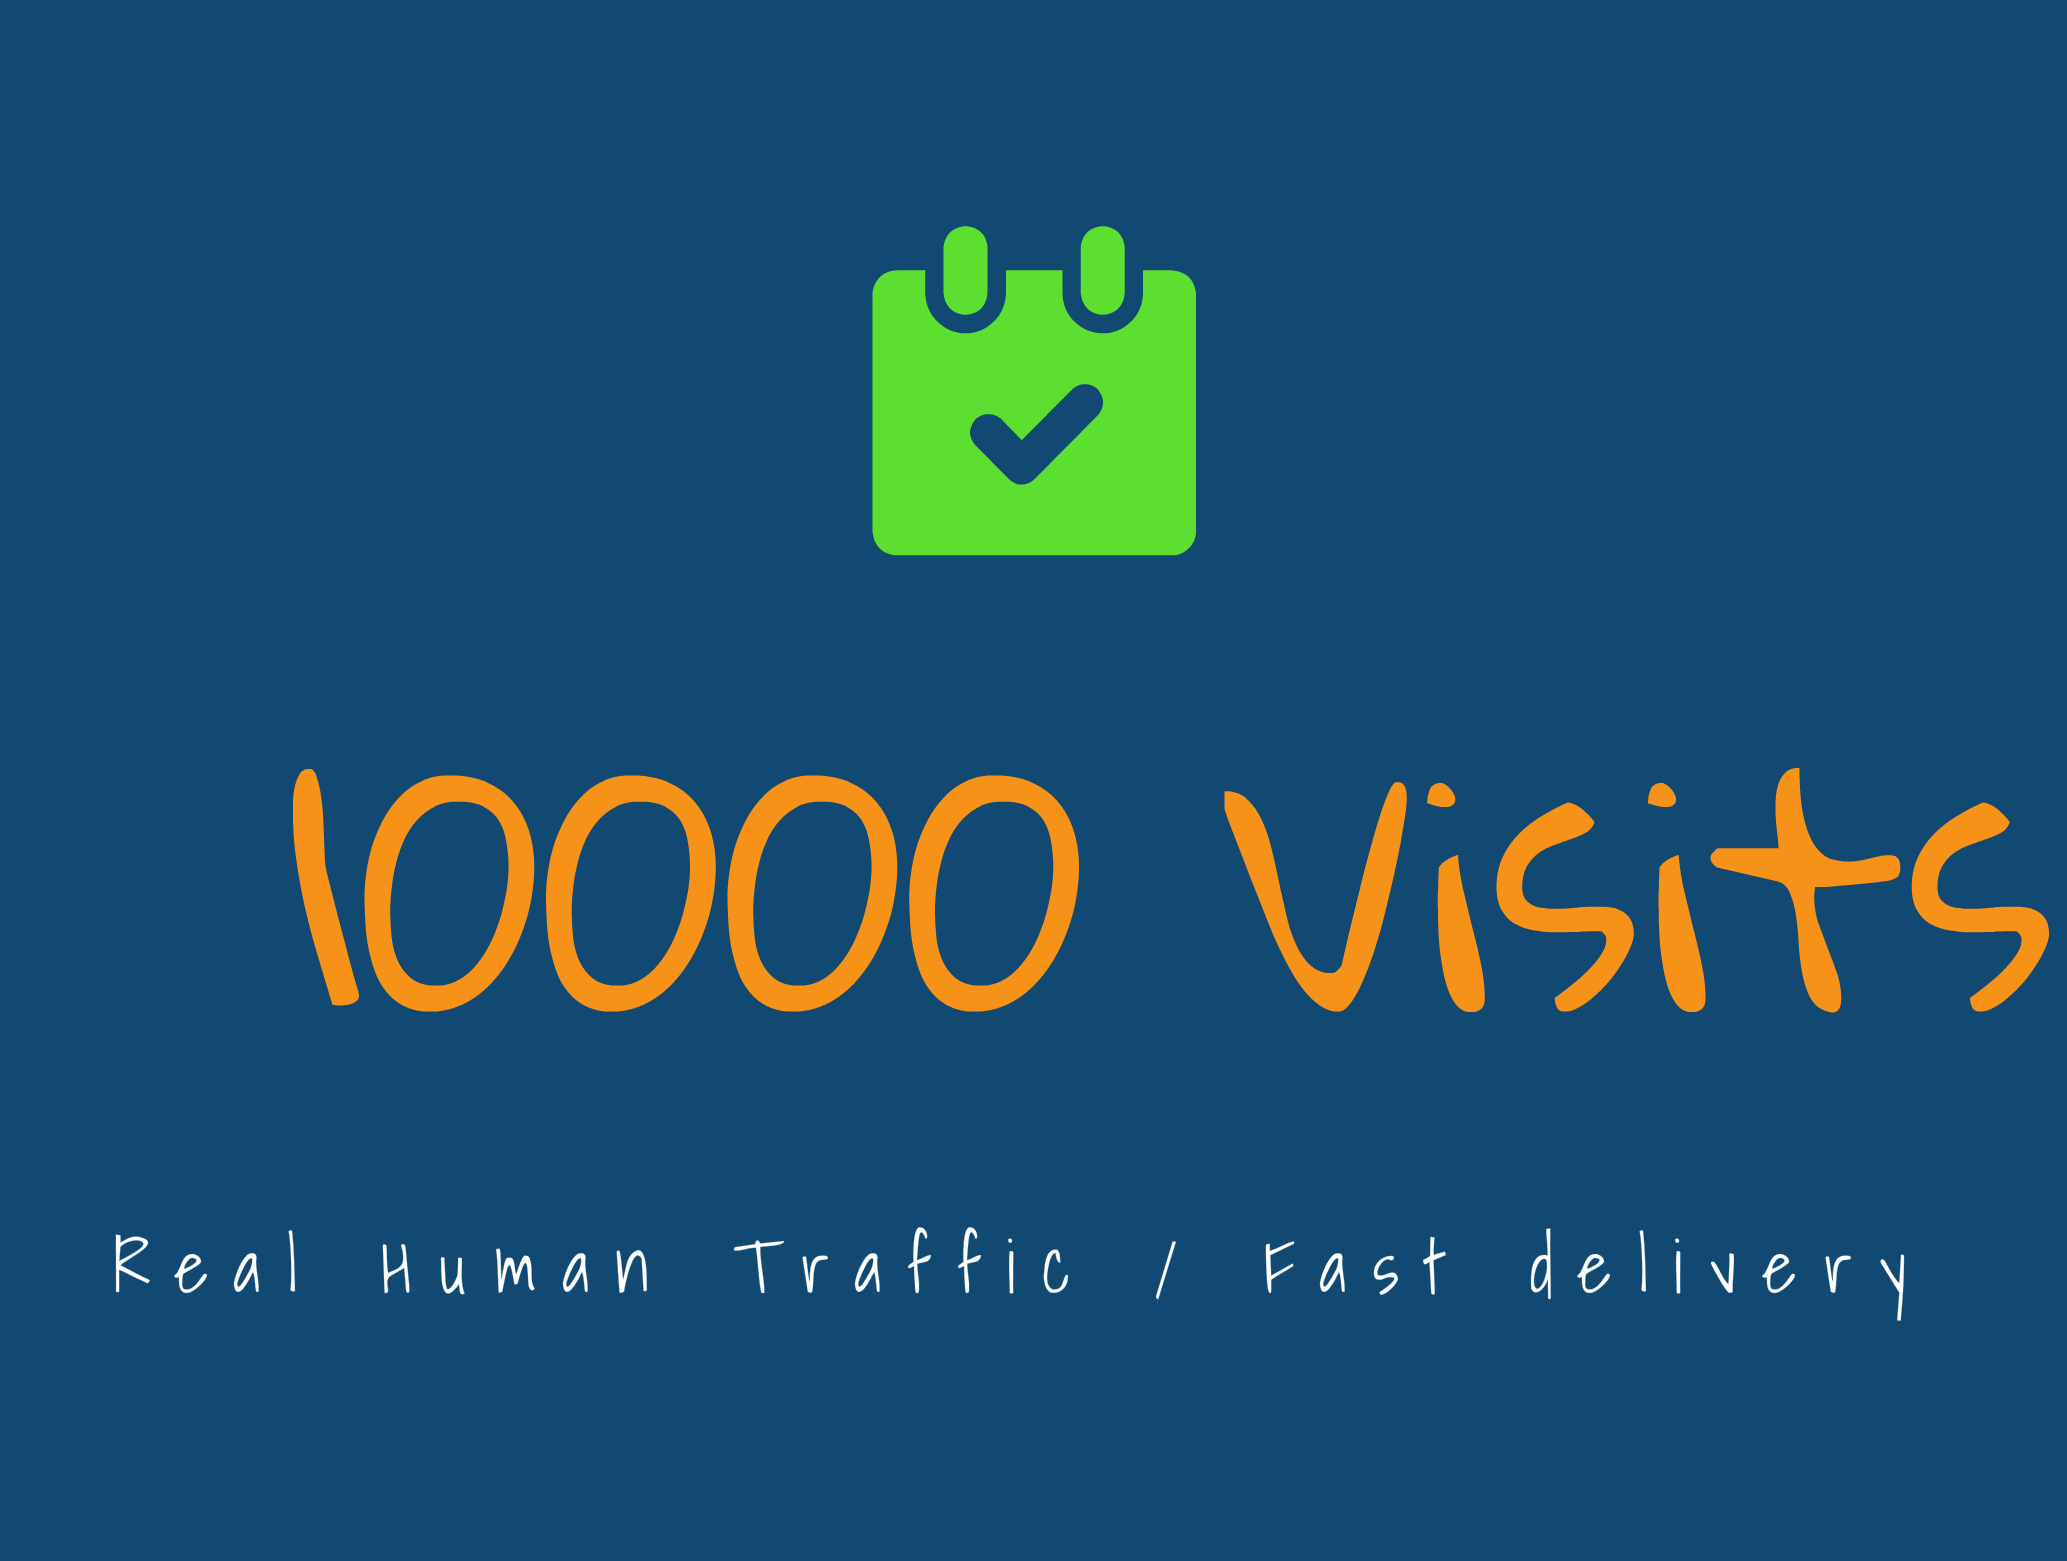 WEBSITE TRAFFIC - 10.000 VISITS